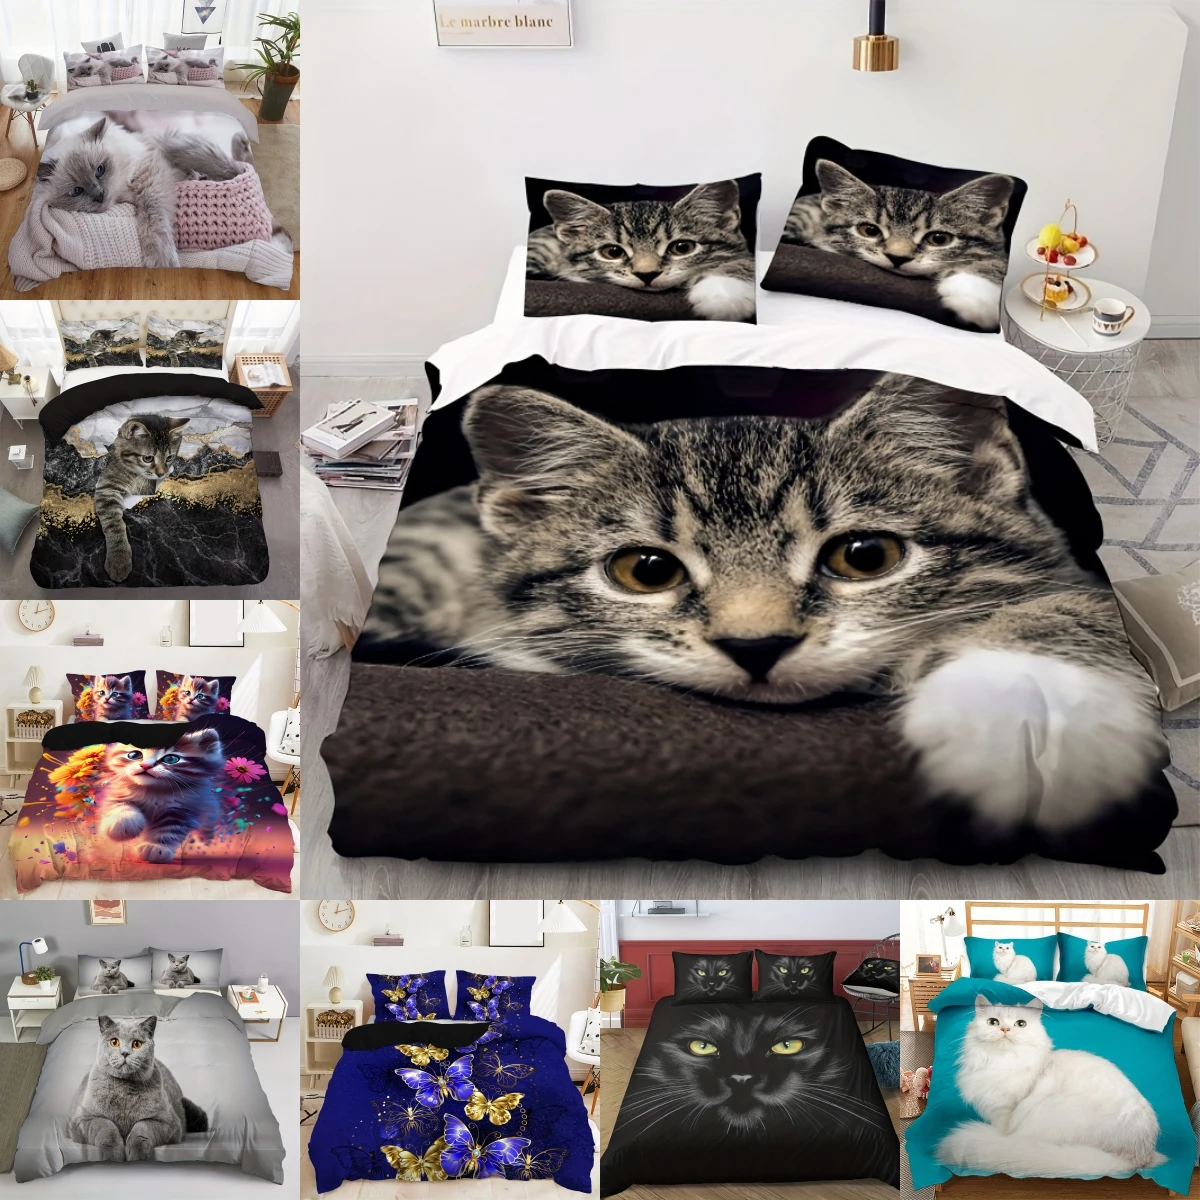 

Cute Cat Duvet Cover 3D Animal Bedding Set Pet Kitten Comforter Cover Microfiber Twin Full King For Kids Teen Boys Bedroom Decor